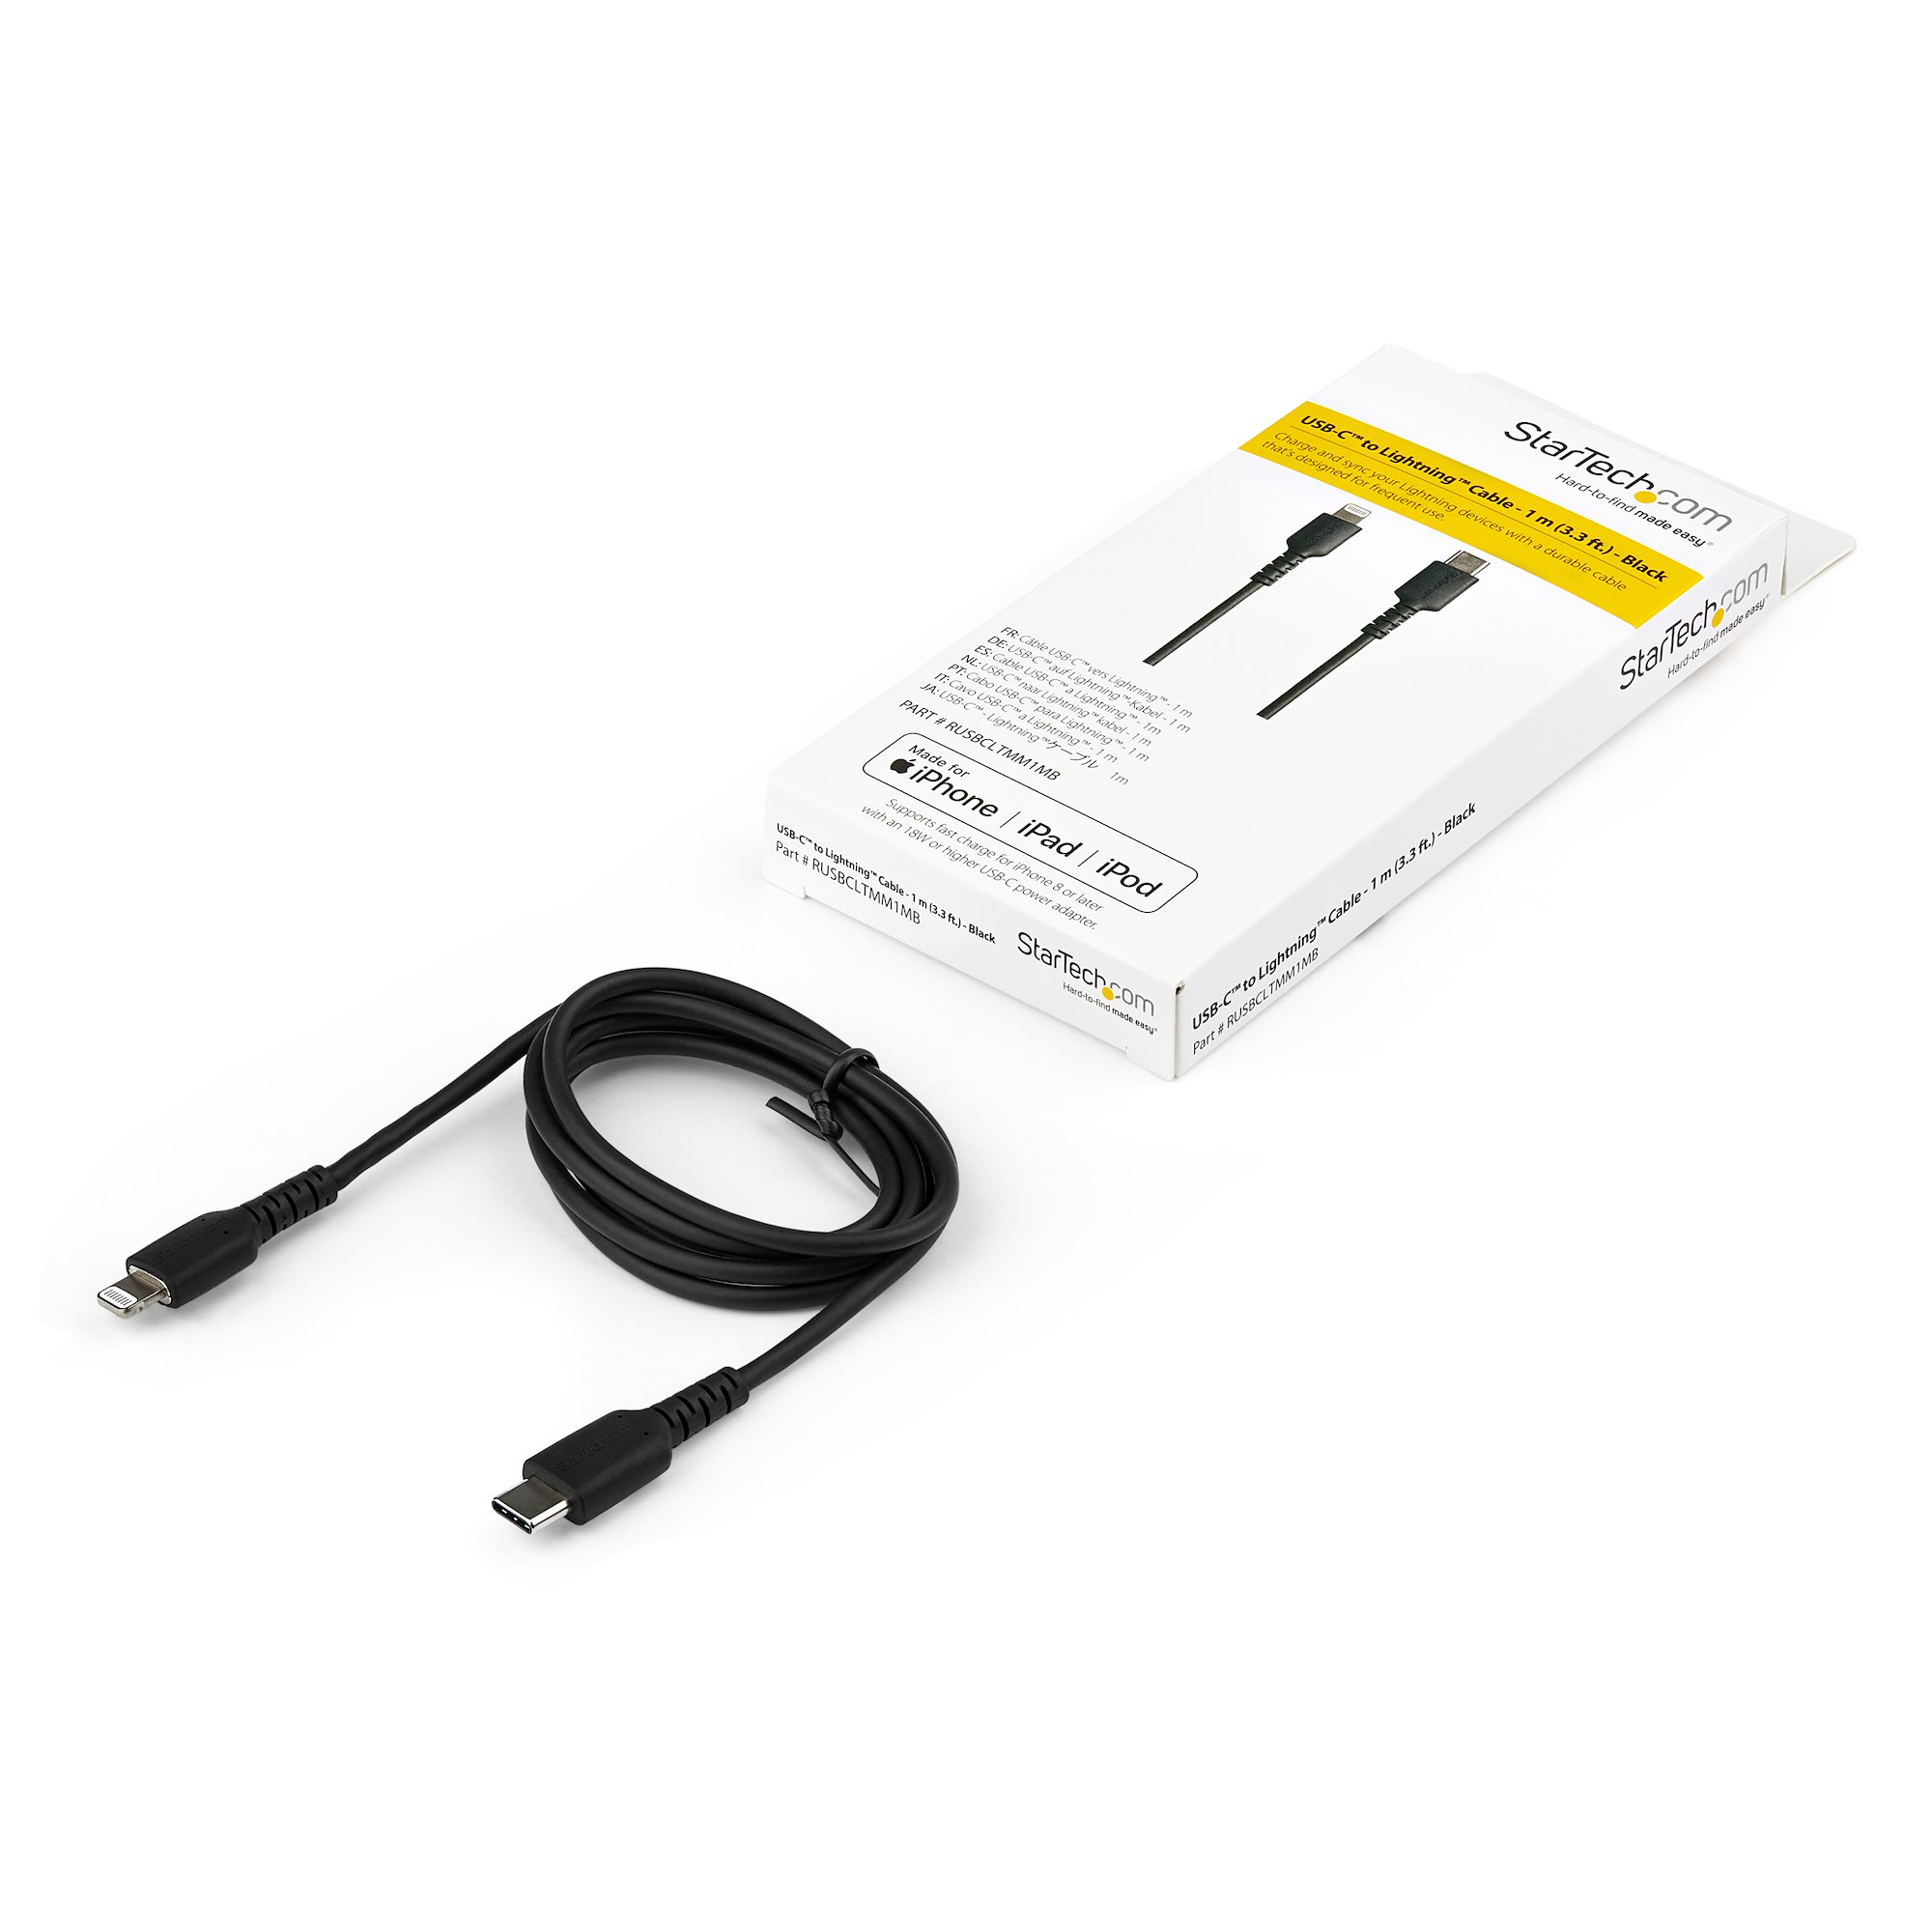 Lightningケーブル USB-A 1m 高耐久アラミド MFi認証 ブラック(RUSBLTMM1MB) 目安在庫=○[メール便対象商品]